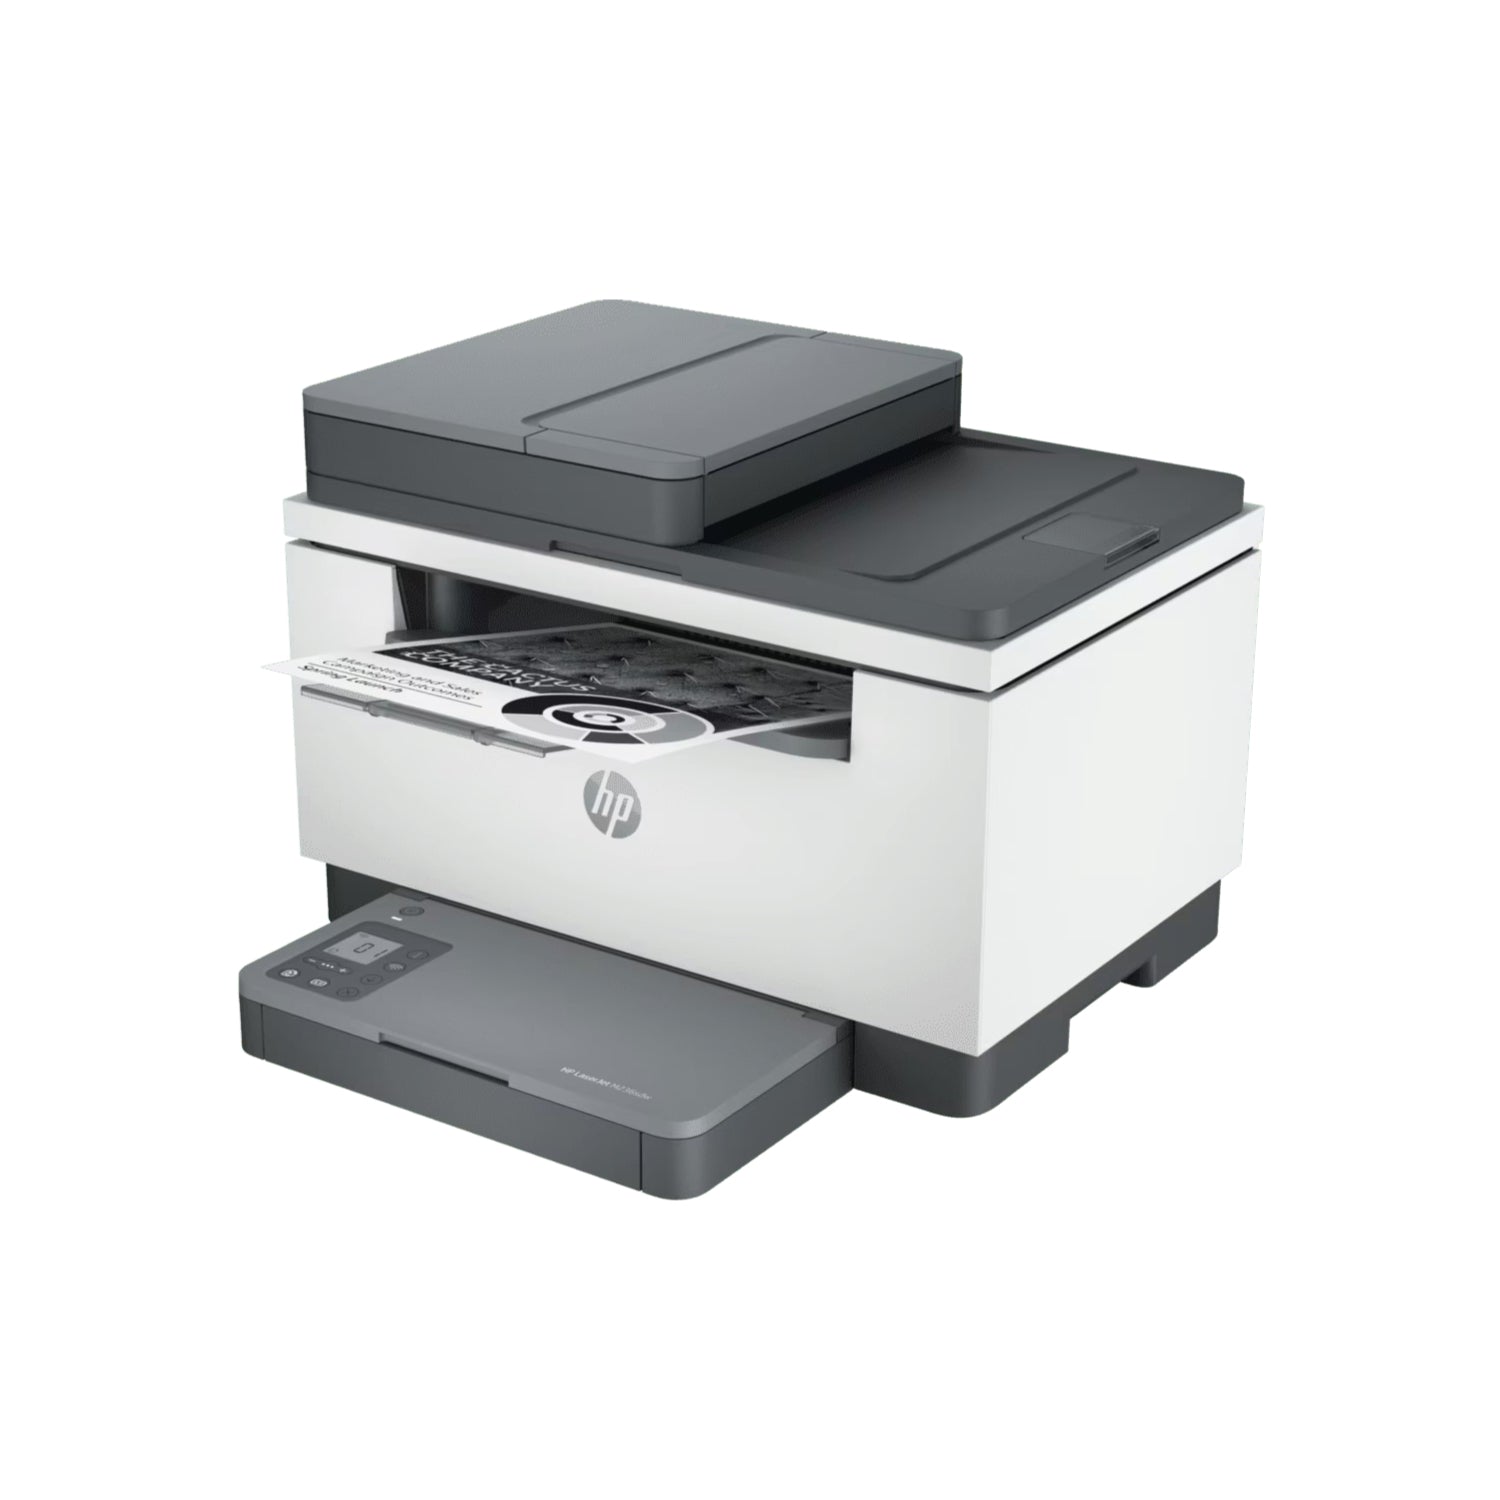 impresora láser multifuncion hp m236sdw vista lateral 2